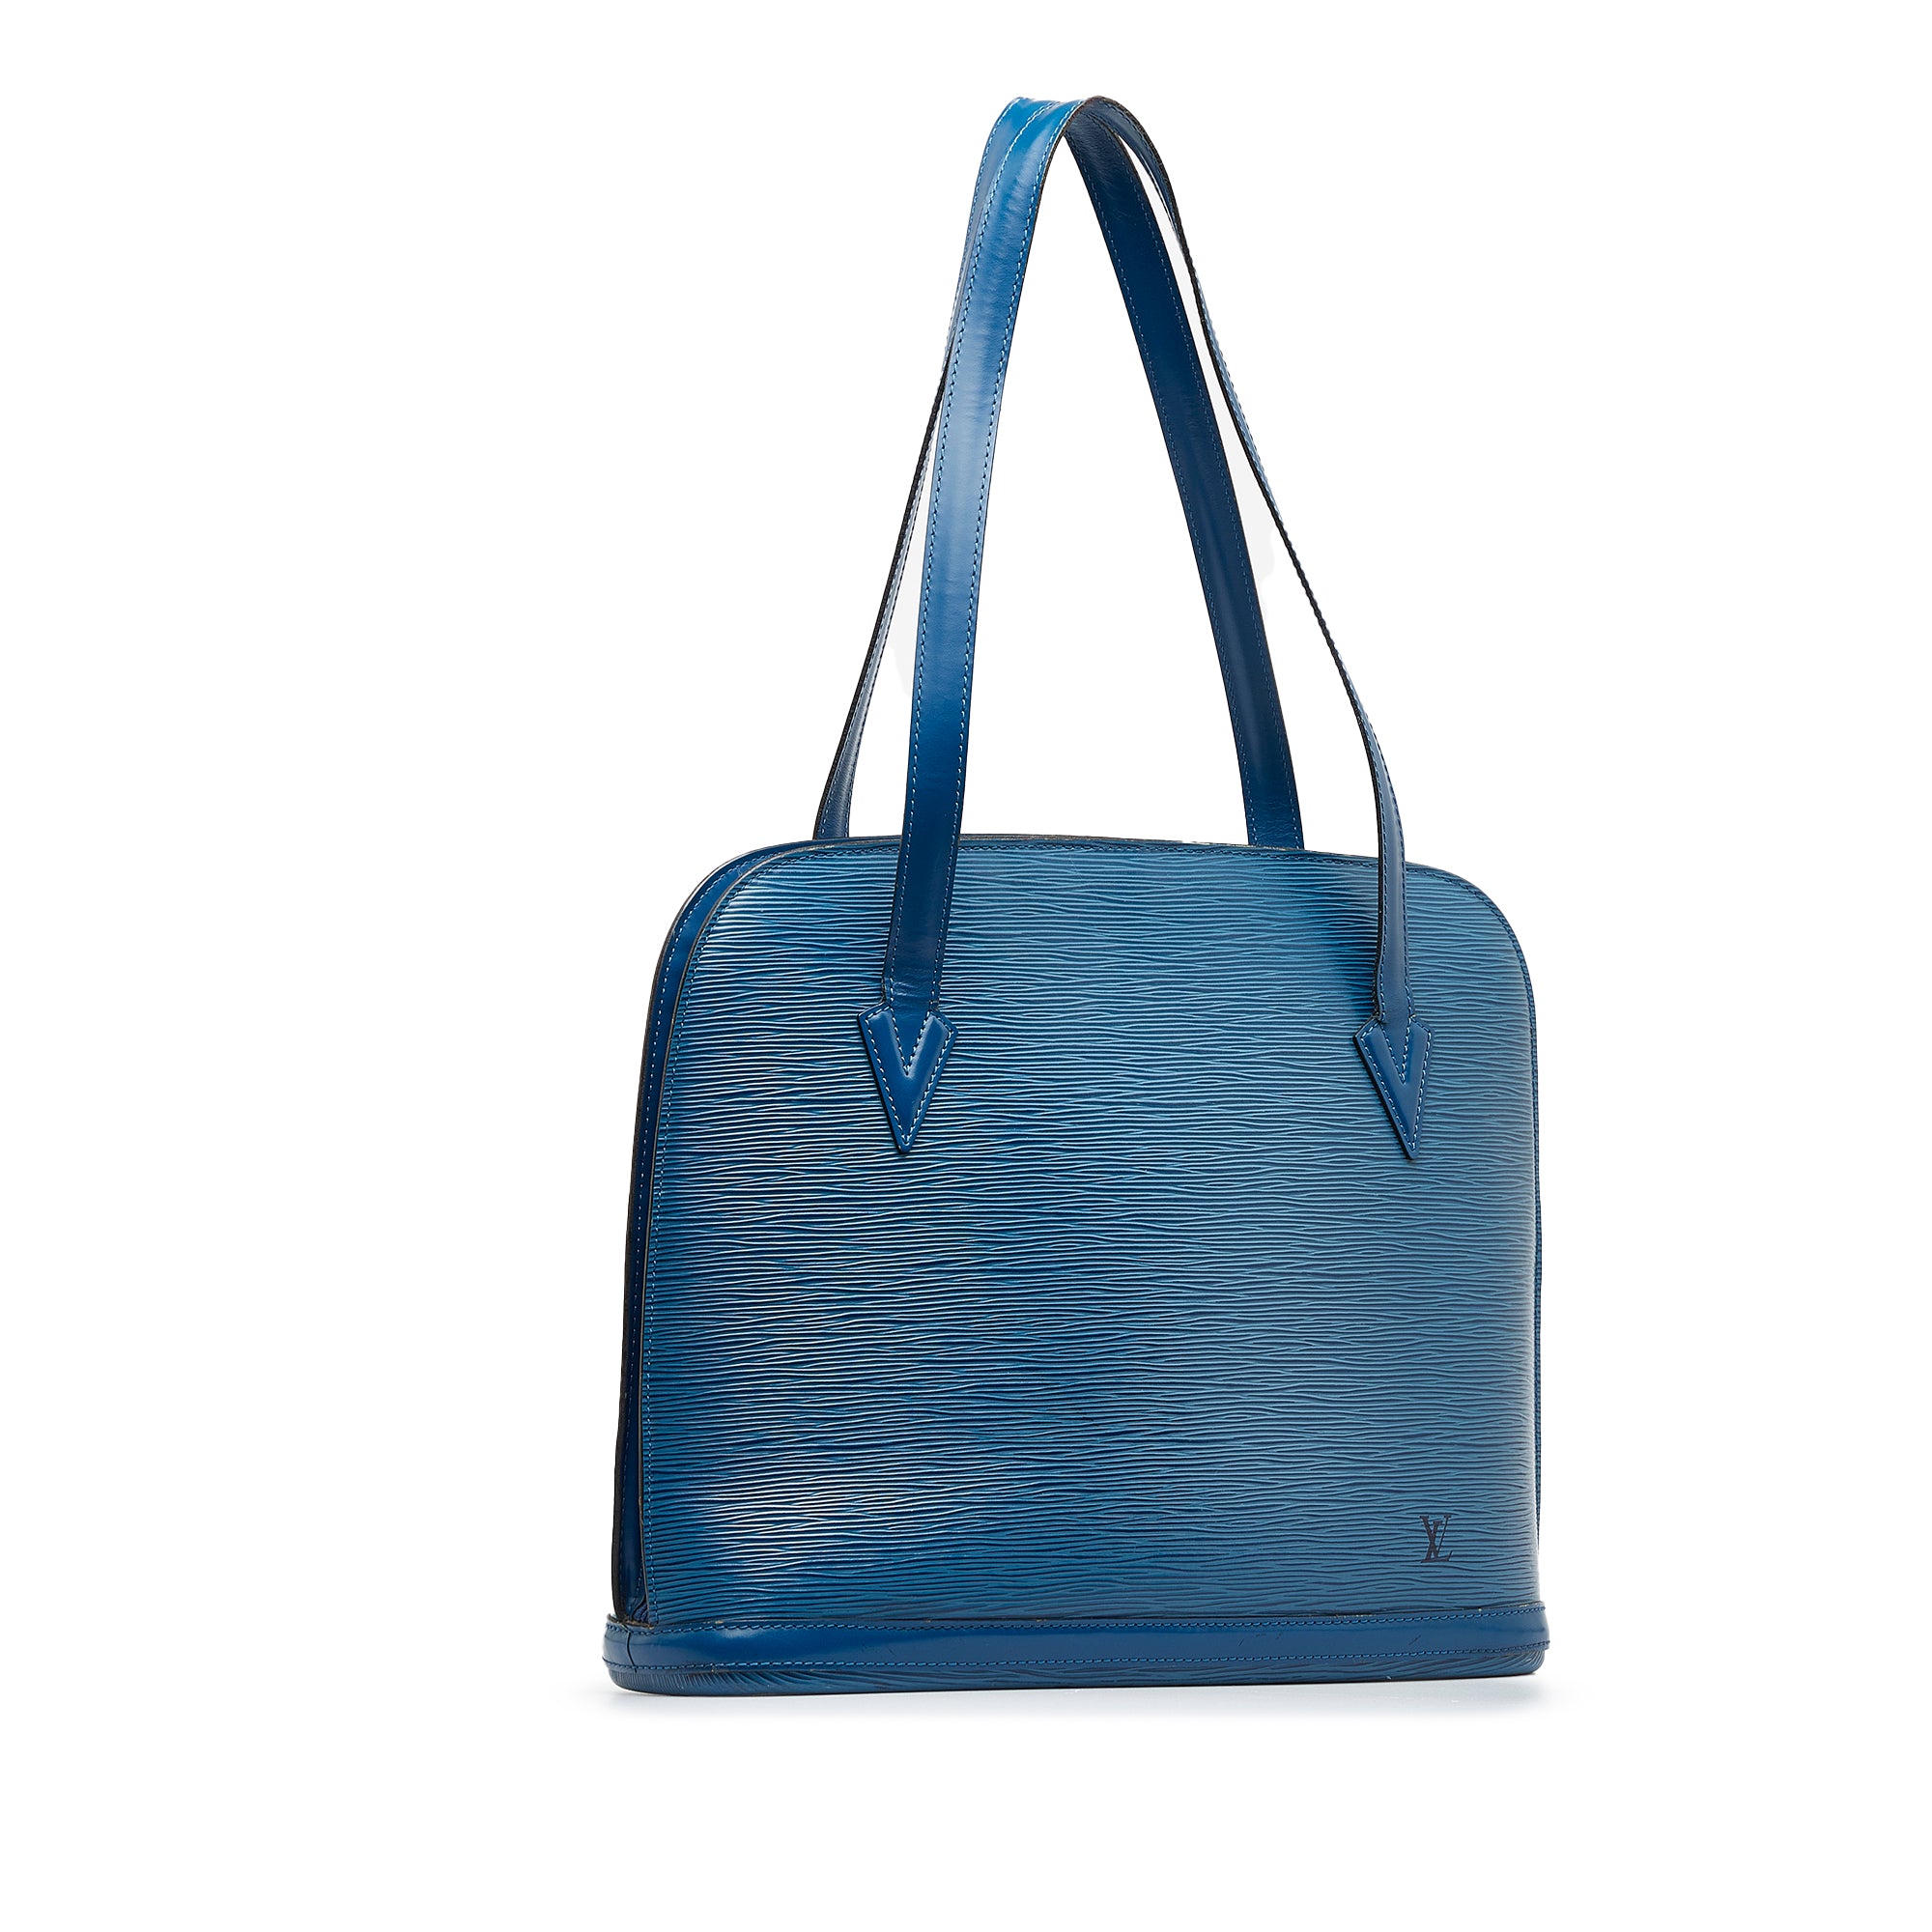 Louis Vuitton Epi Lussac Tote blue leather women bag